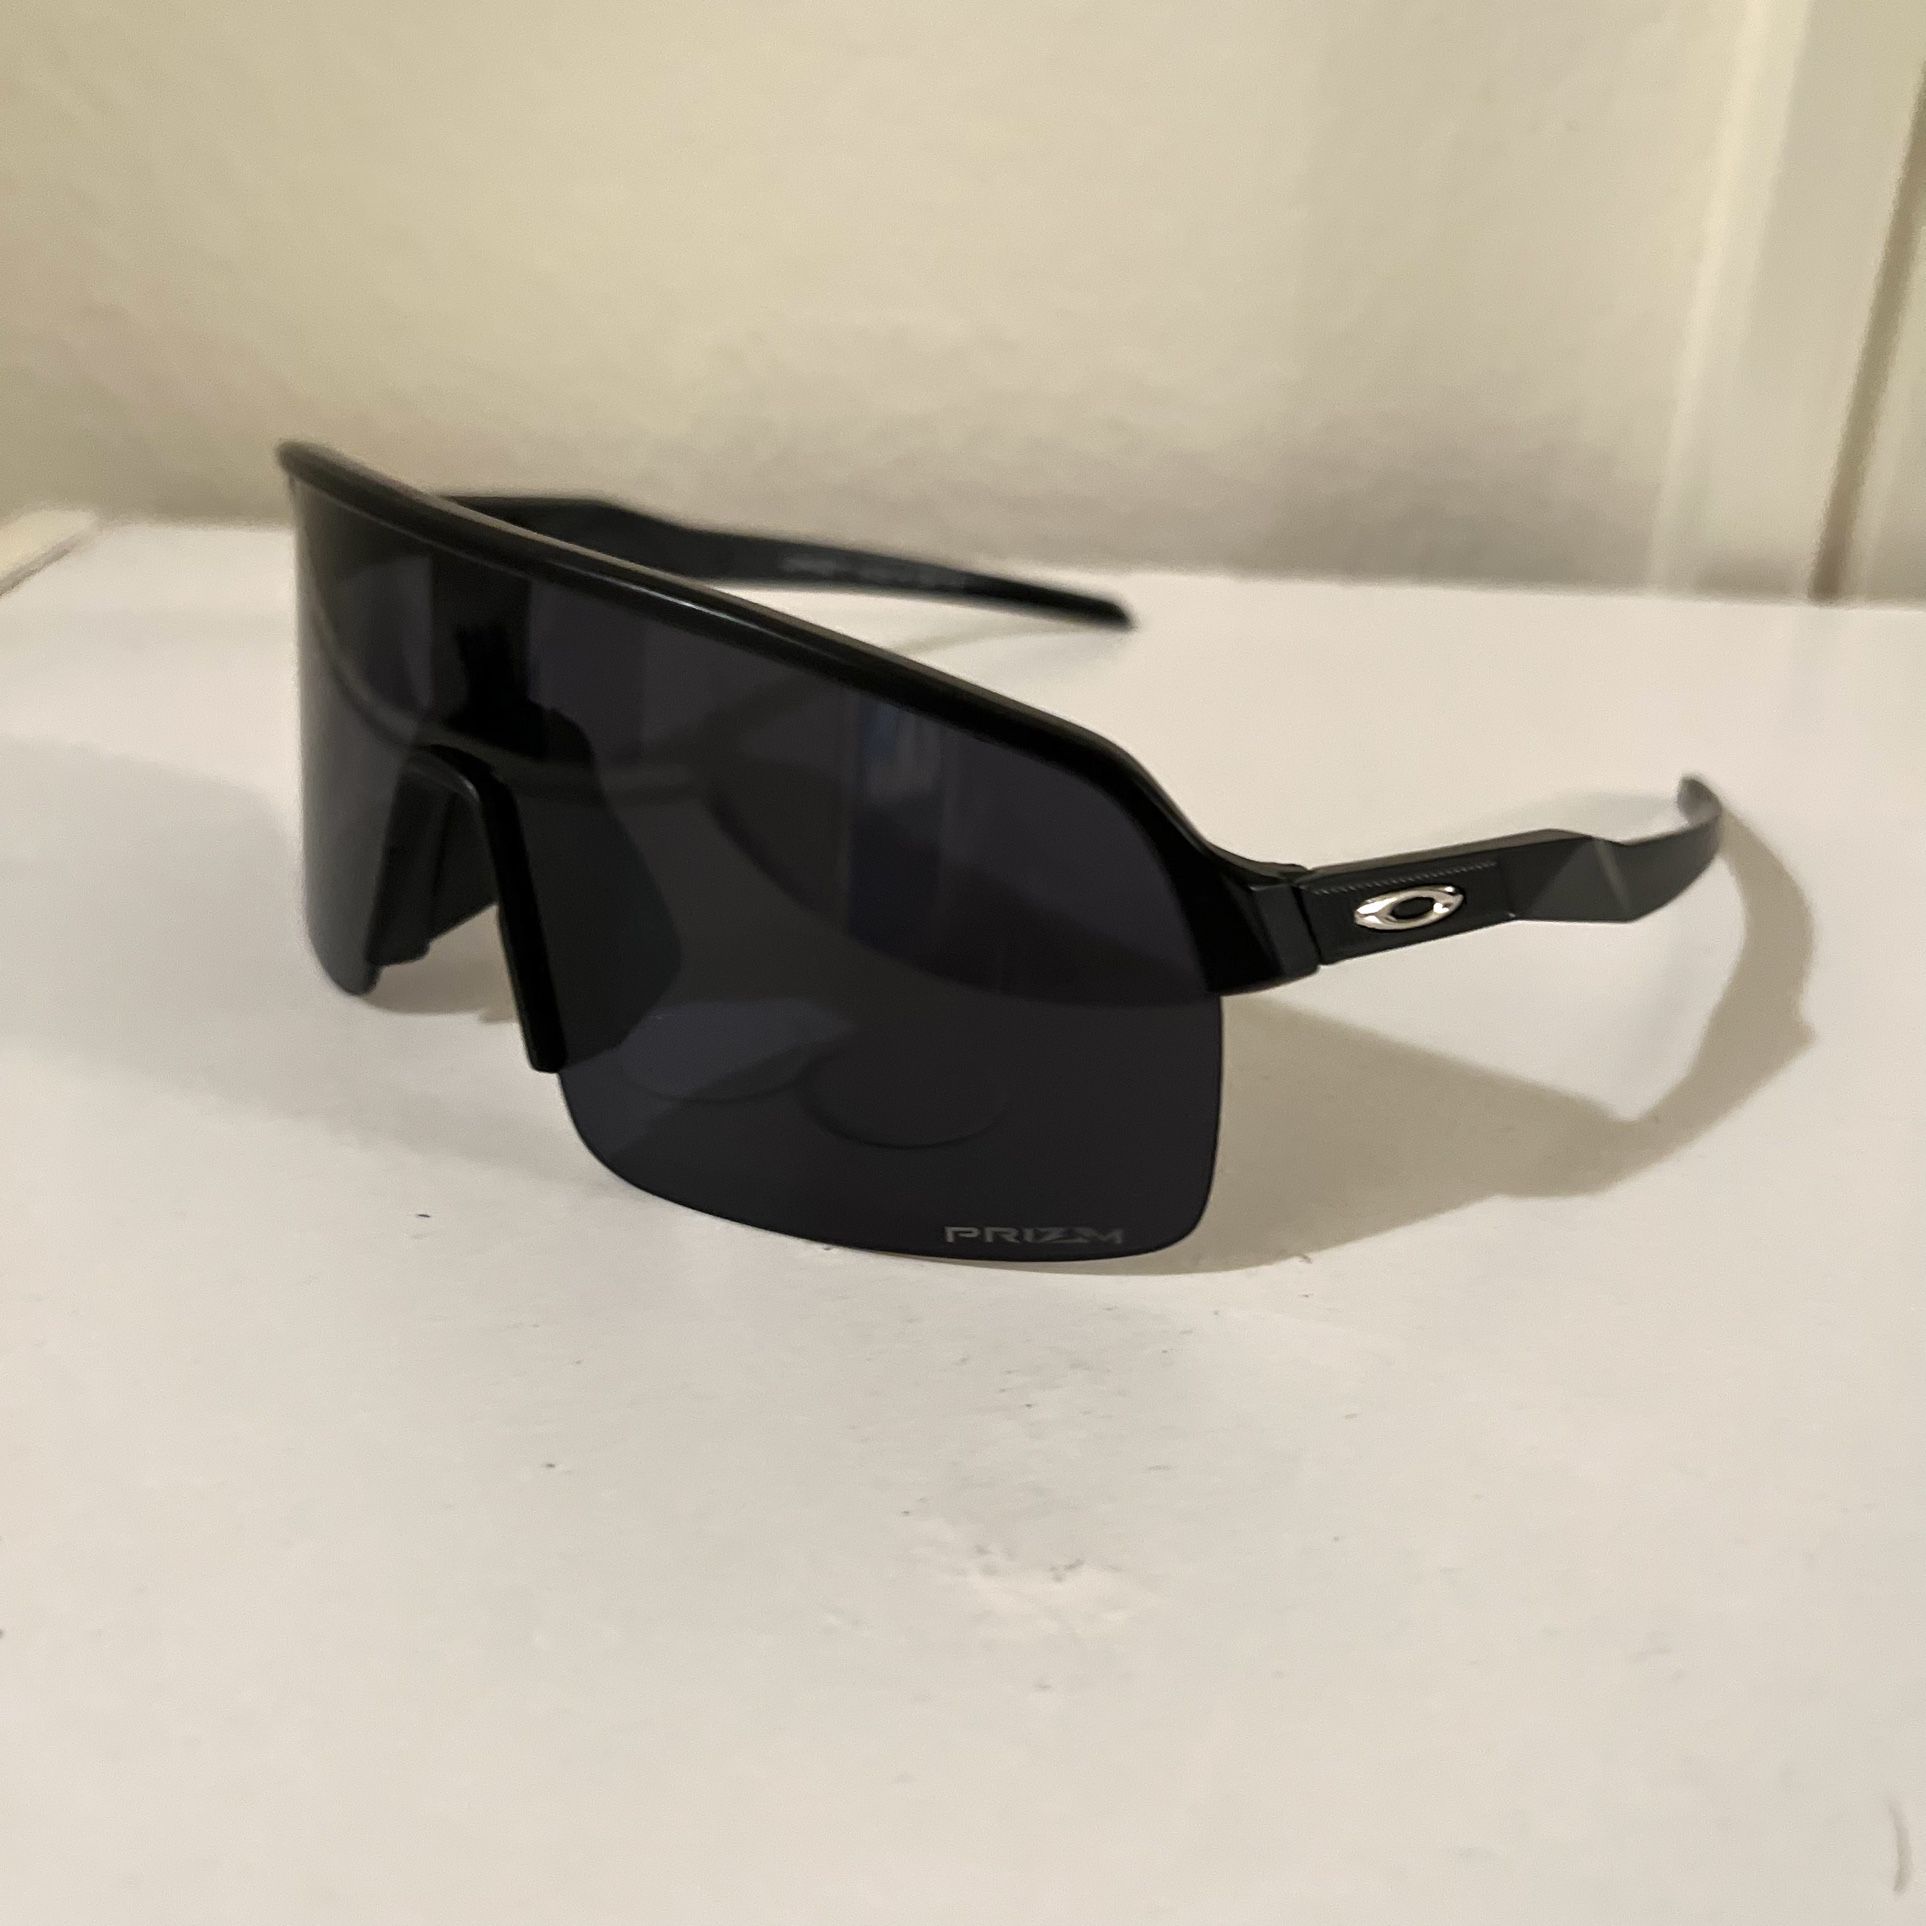 Oakley Sutro SunGlasses - No Damage - No Hard Case - Pick Up Costa Mesa